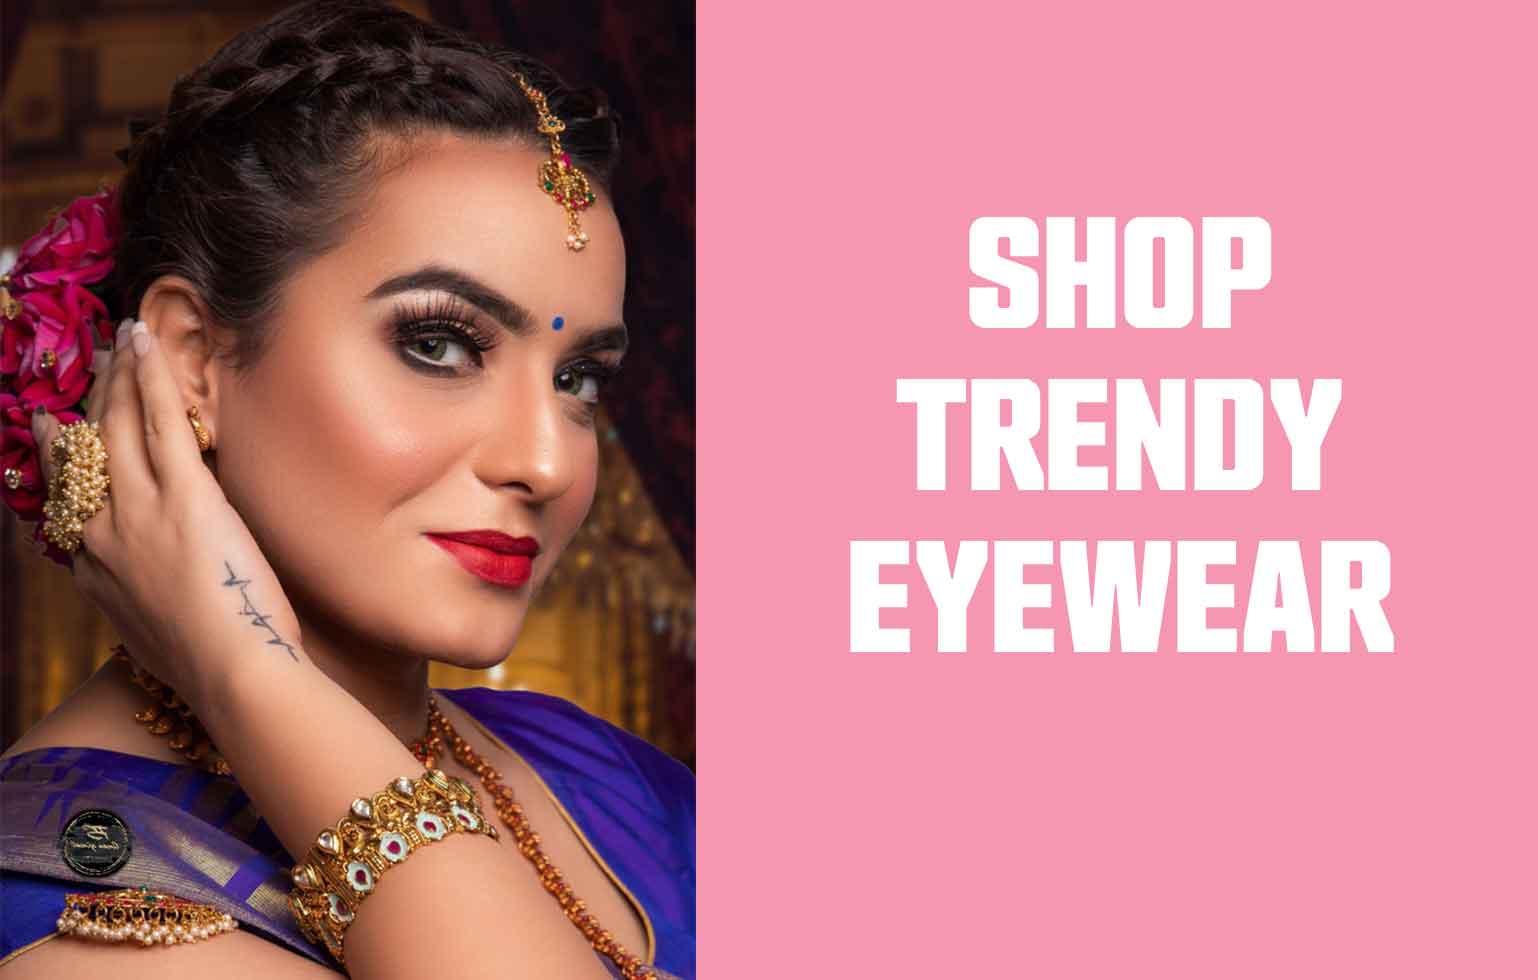 Wedding Eyelashes Mink Avana Beauty™ Shop the Look